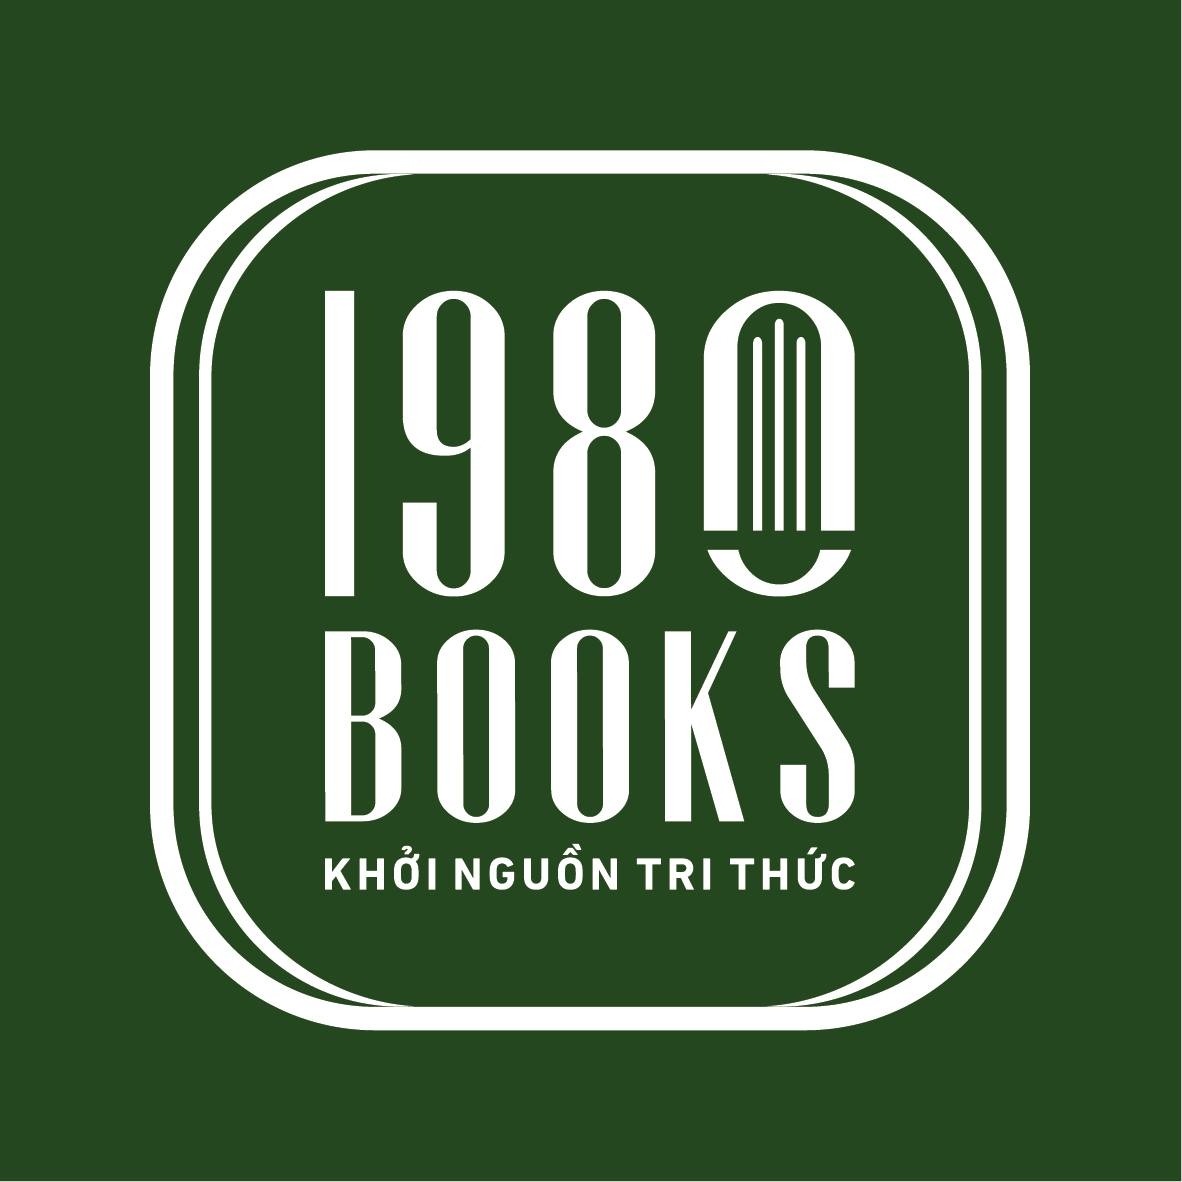 1980books Store